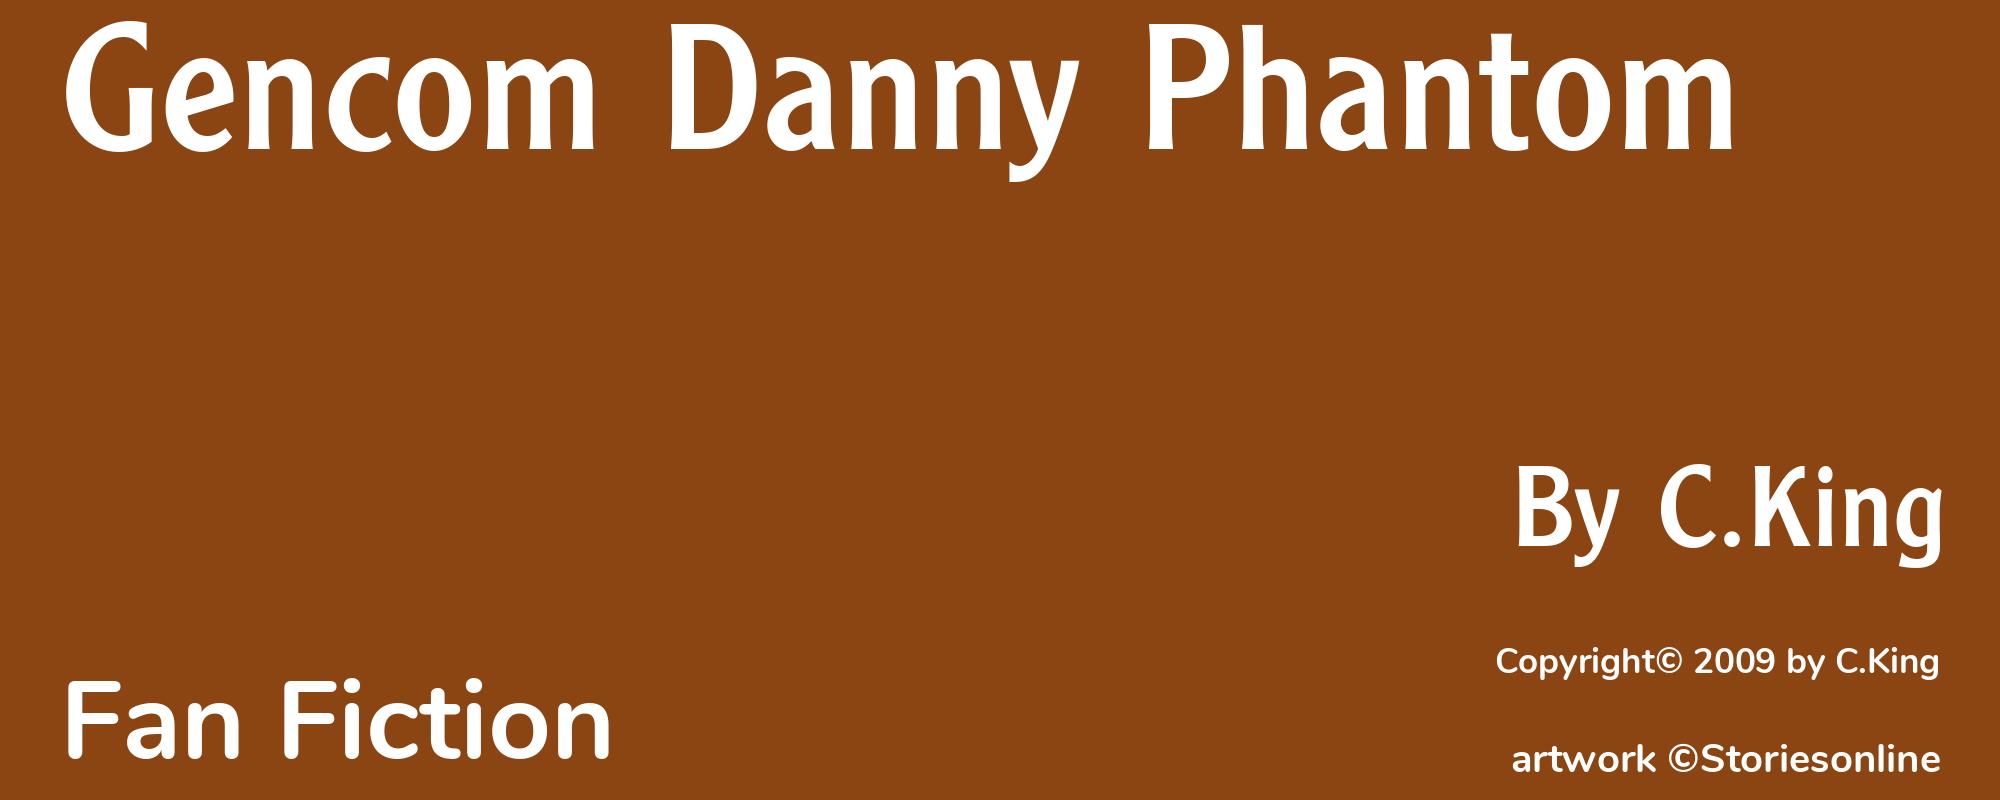 Gencom Danny Phantom - Cover